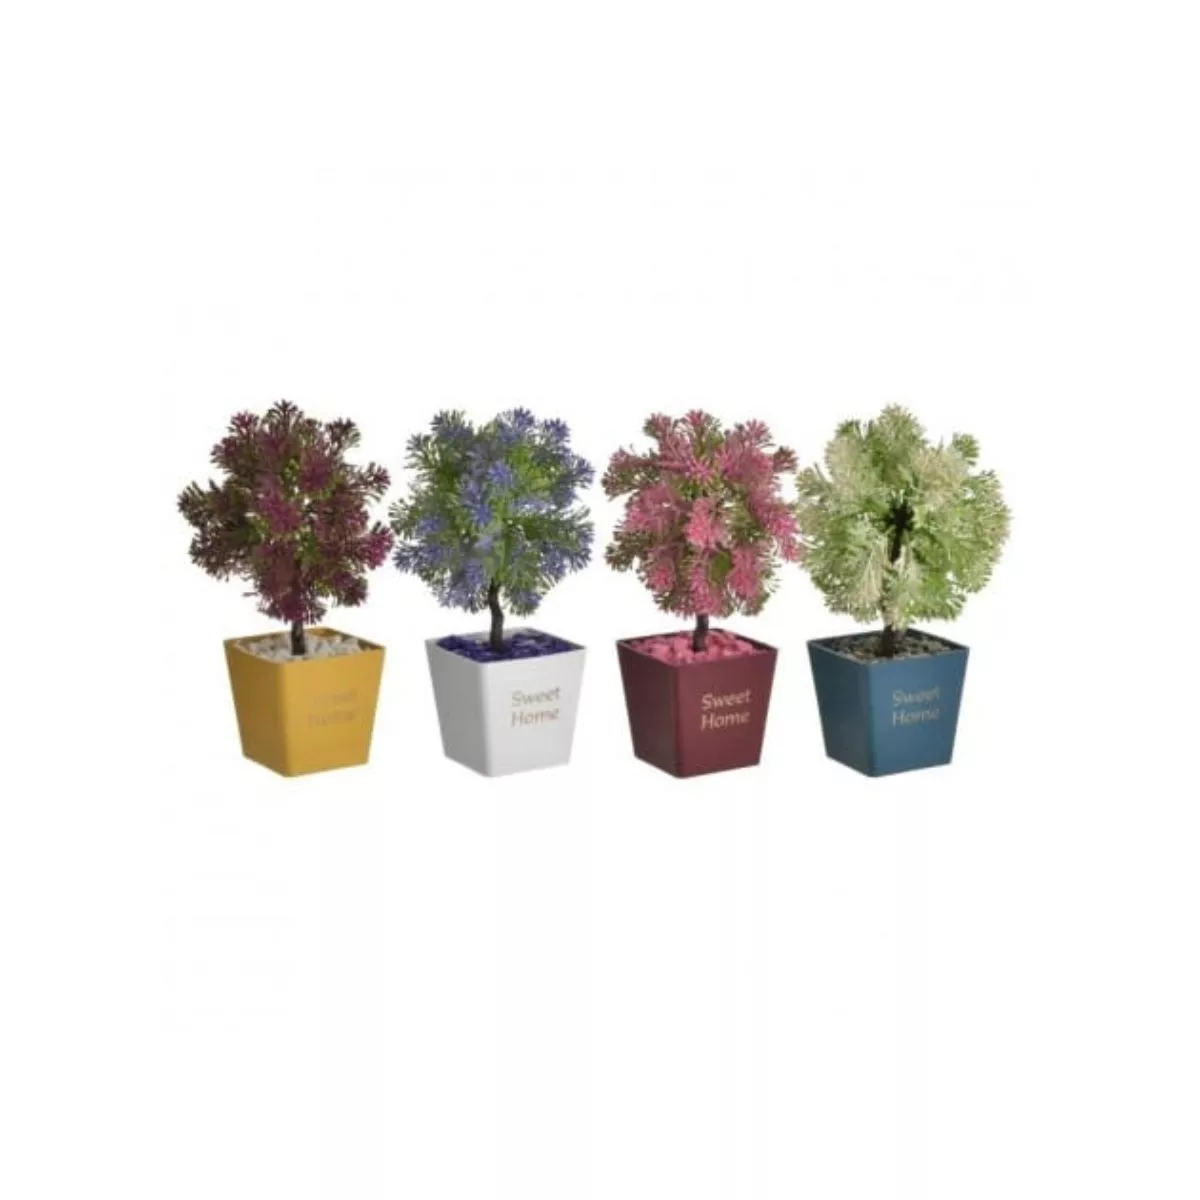 Ghiveci cu plante decorative Glow, 4 culori 1 2